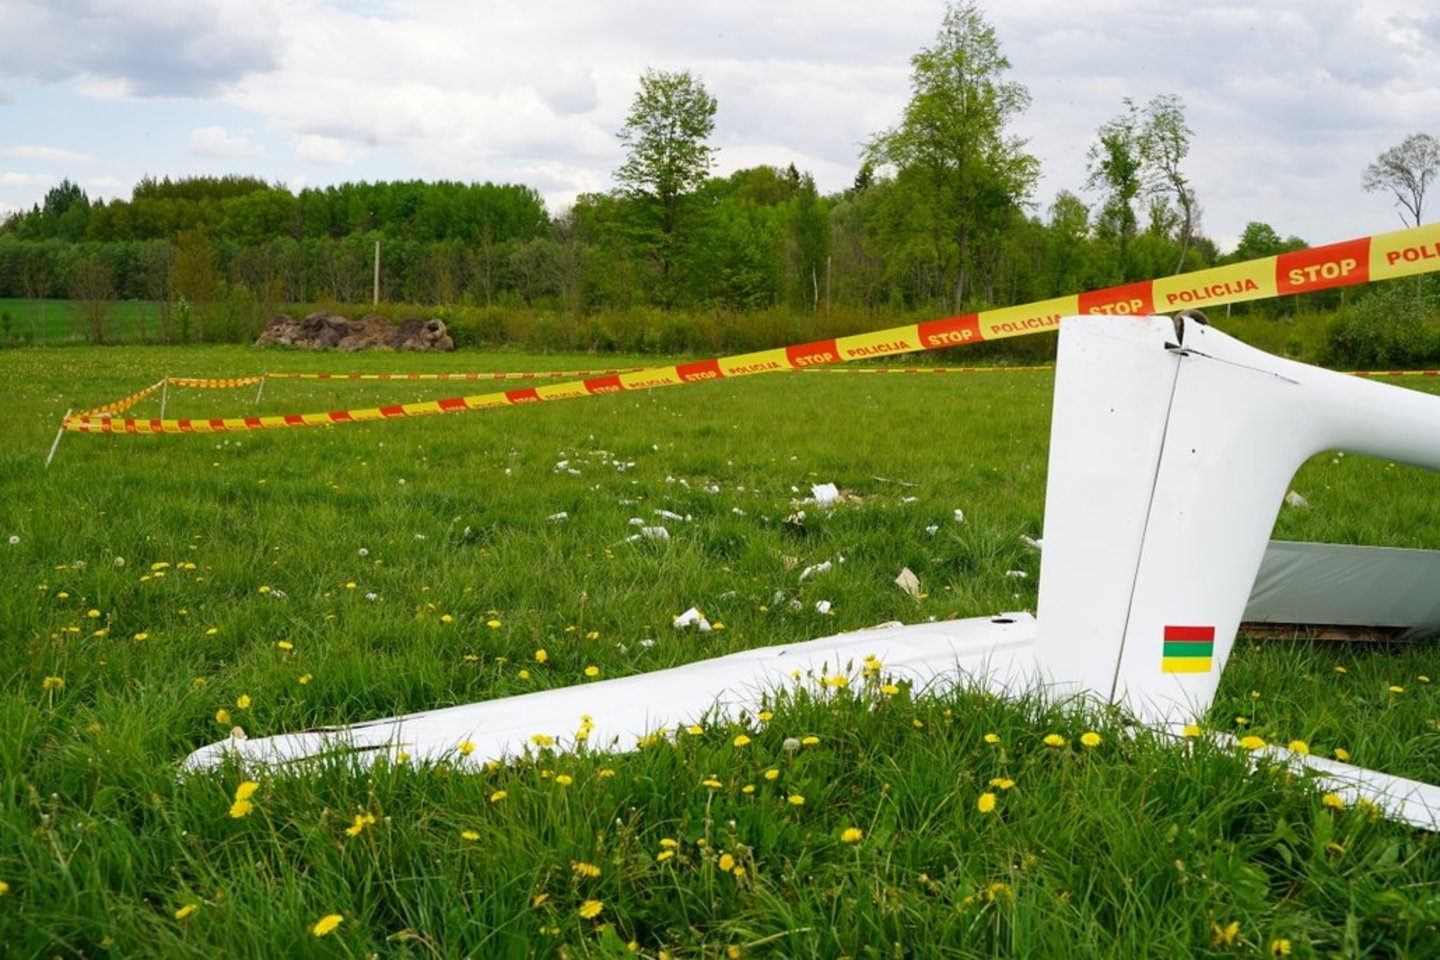 Jurbarko rajone nukritus orlaiviui, žuvo 57 metų pilotas (nuotr. vaizdai po avarijos). <br> L. Pilecko ("Jurbarko šviesa") nuotr. 